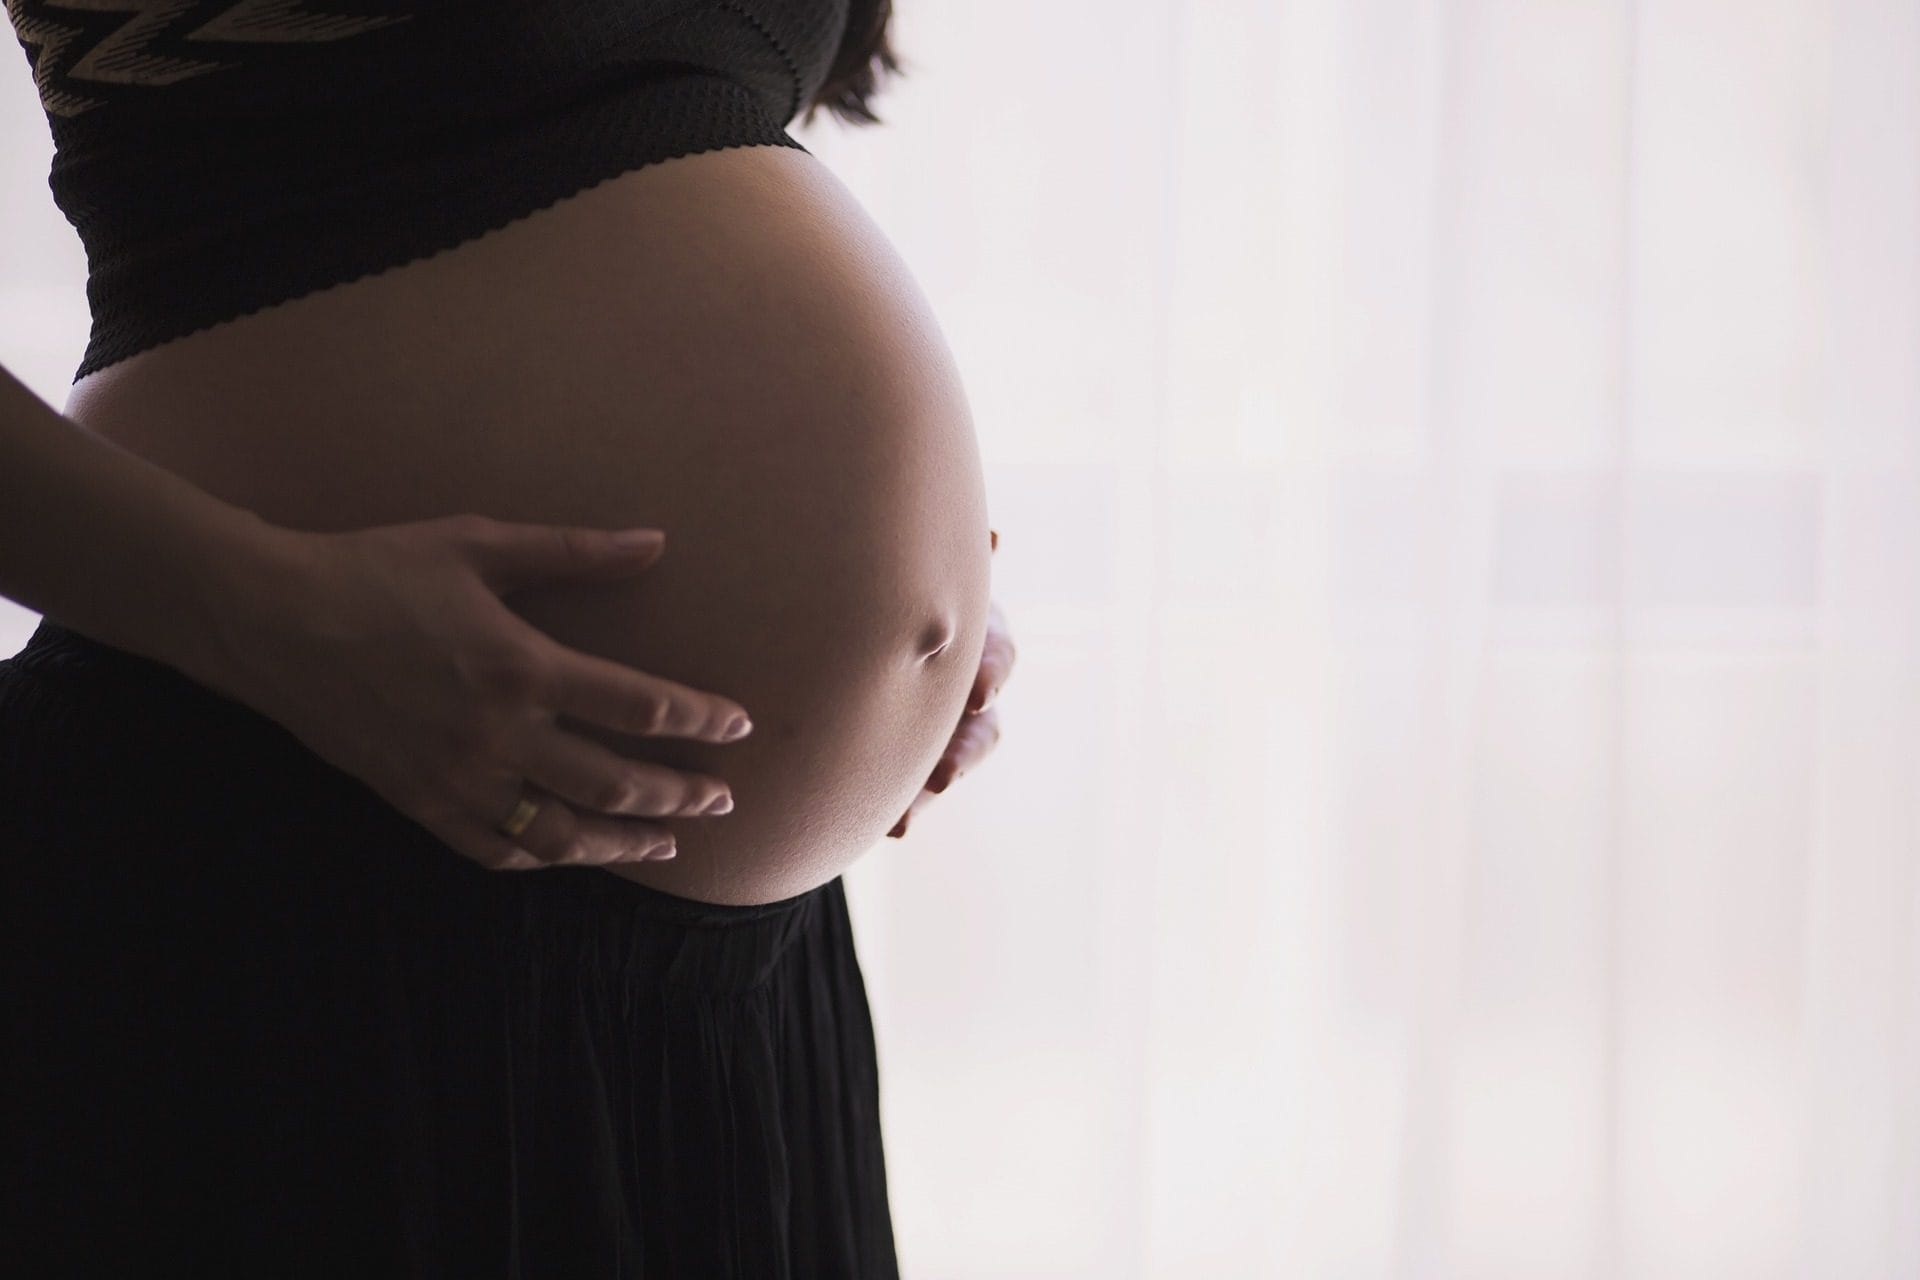 Turno Anses por Embarazo: ¿Se Saca Turno En Anses Por Embarazo Y Su Beneficio?